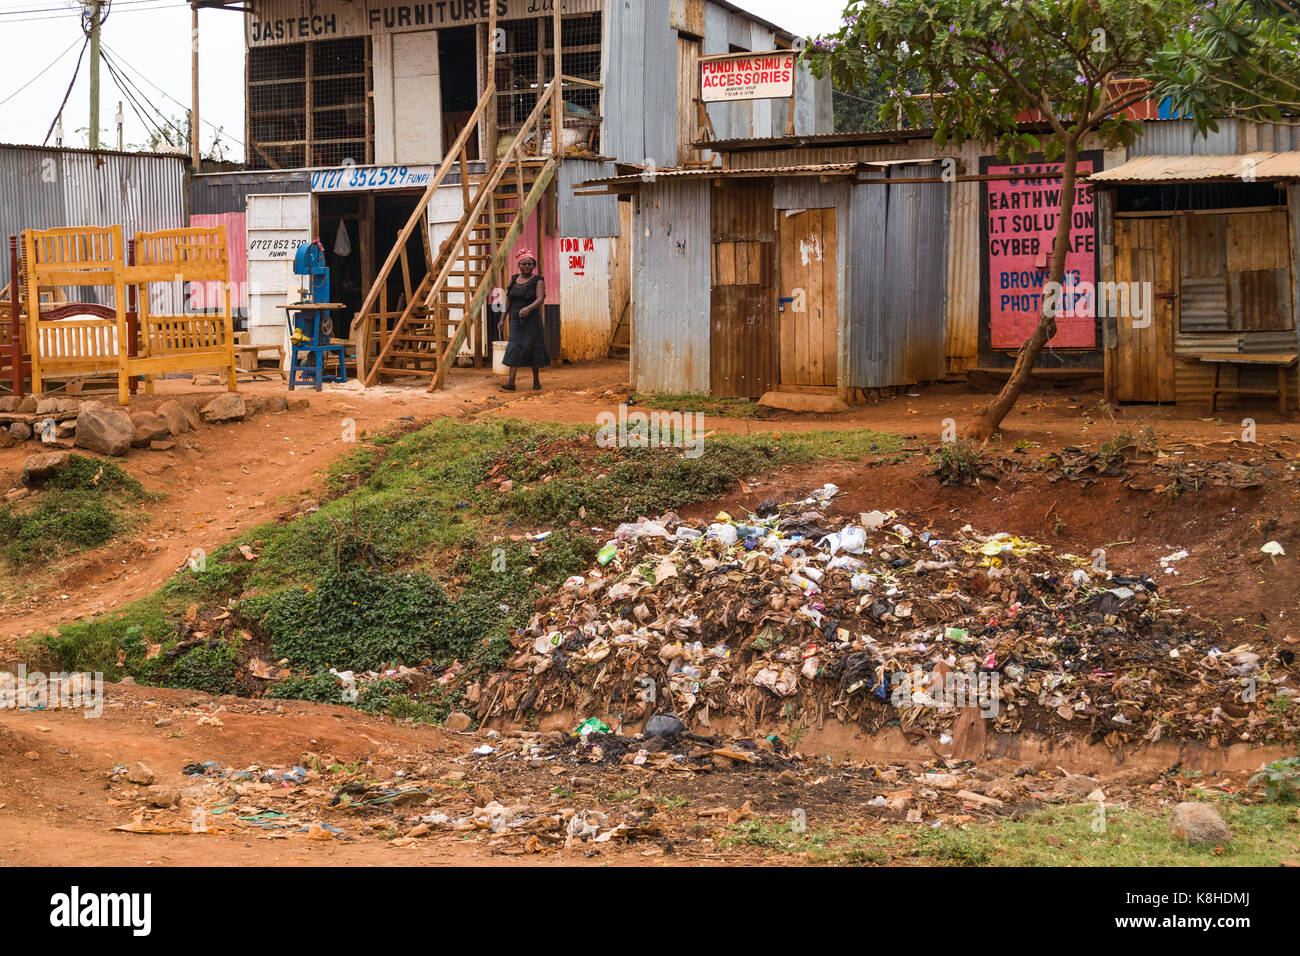 Des cabanes et des capacités routières avec des meubles à l'extérieur, des déchets d'ordures en premier plan, au Kenya Banque D'Images